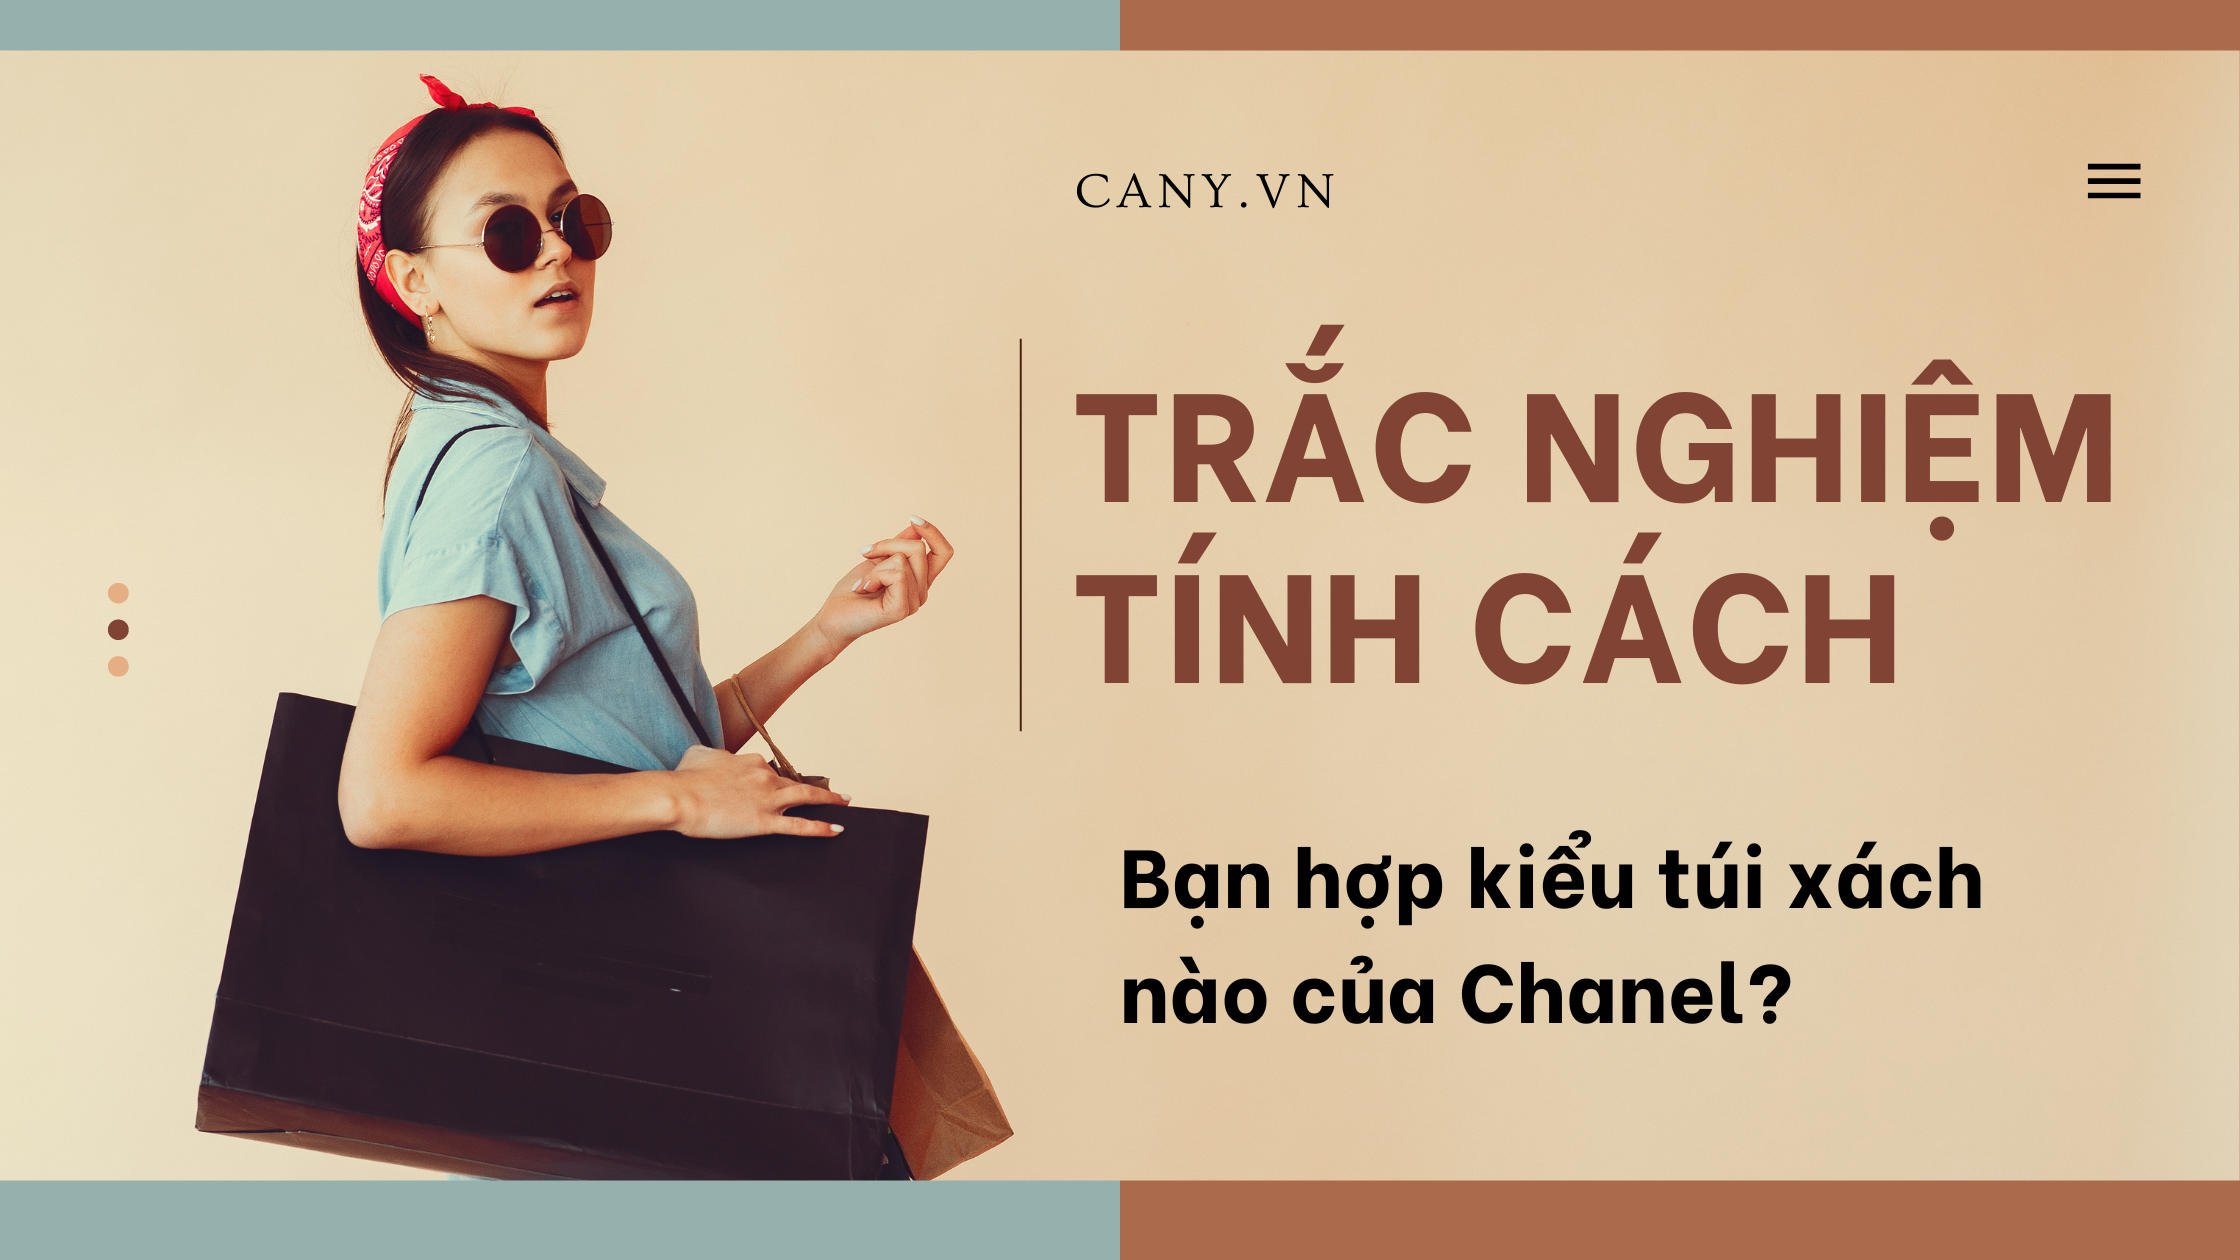 Trắc nghiệm tính cách: Bạn hợp kiểu túi xách nào của Chanel?